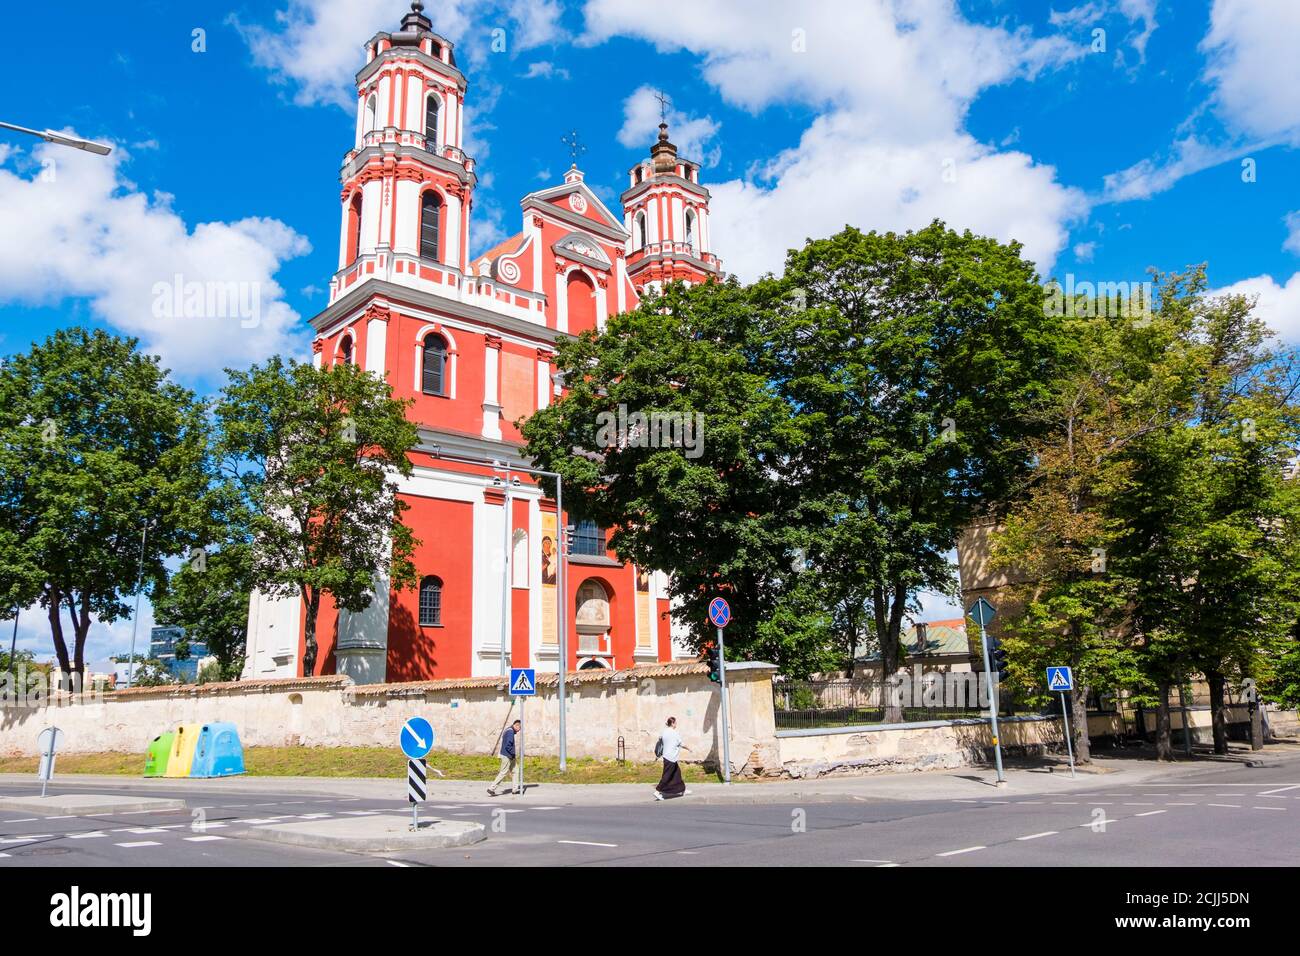 Šv. Apaštalų Pilypo ir Jokūbo bažnyčia, Saint Apostoles Philip and Jacob Church, Vilnius, Lithuania Stock Photo